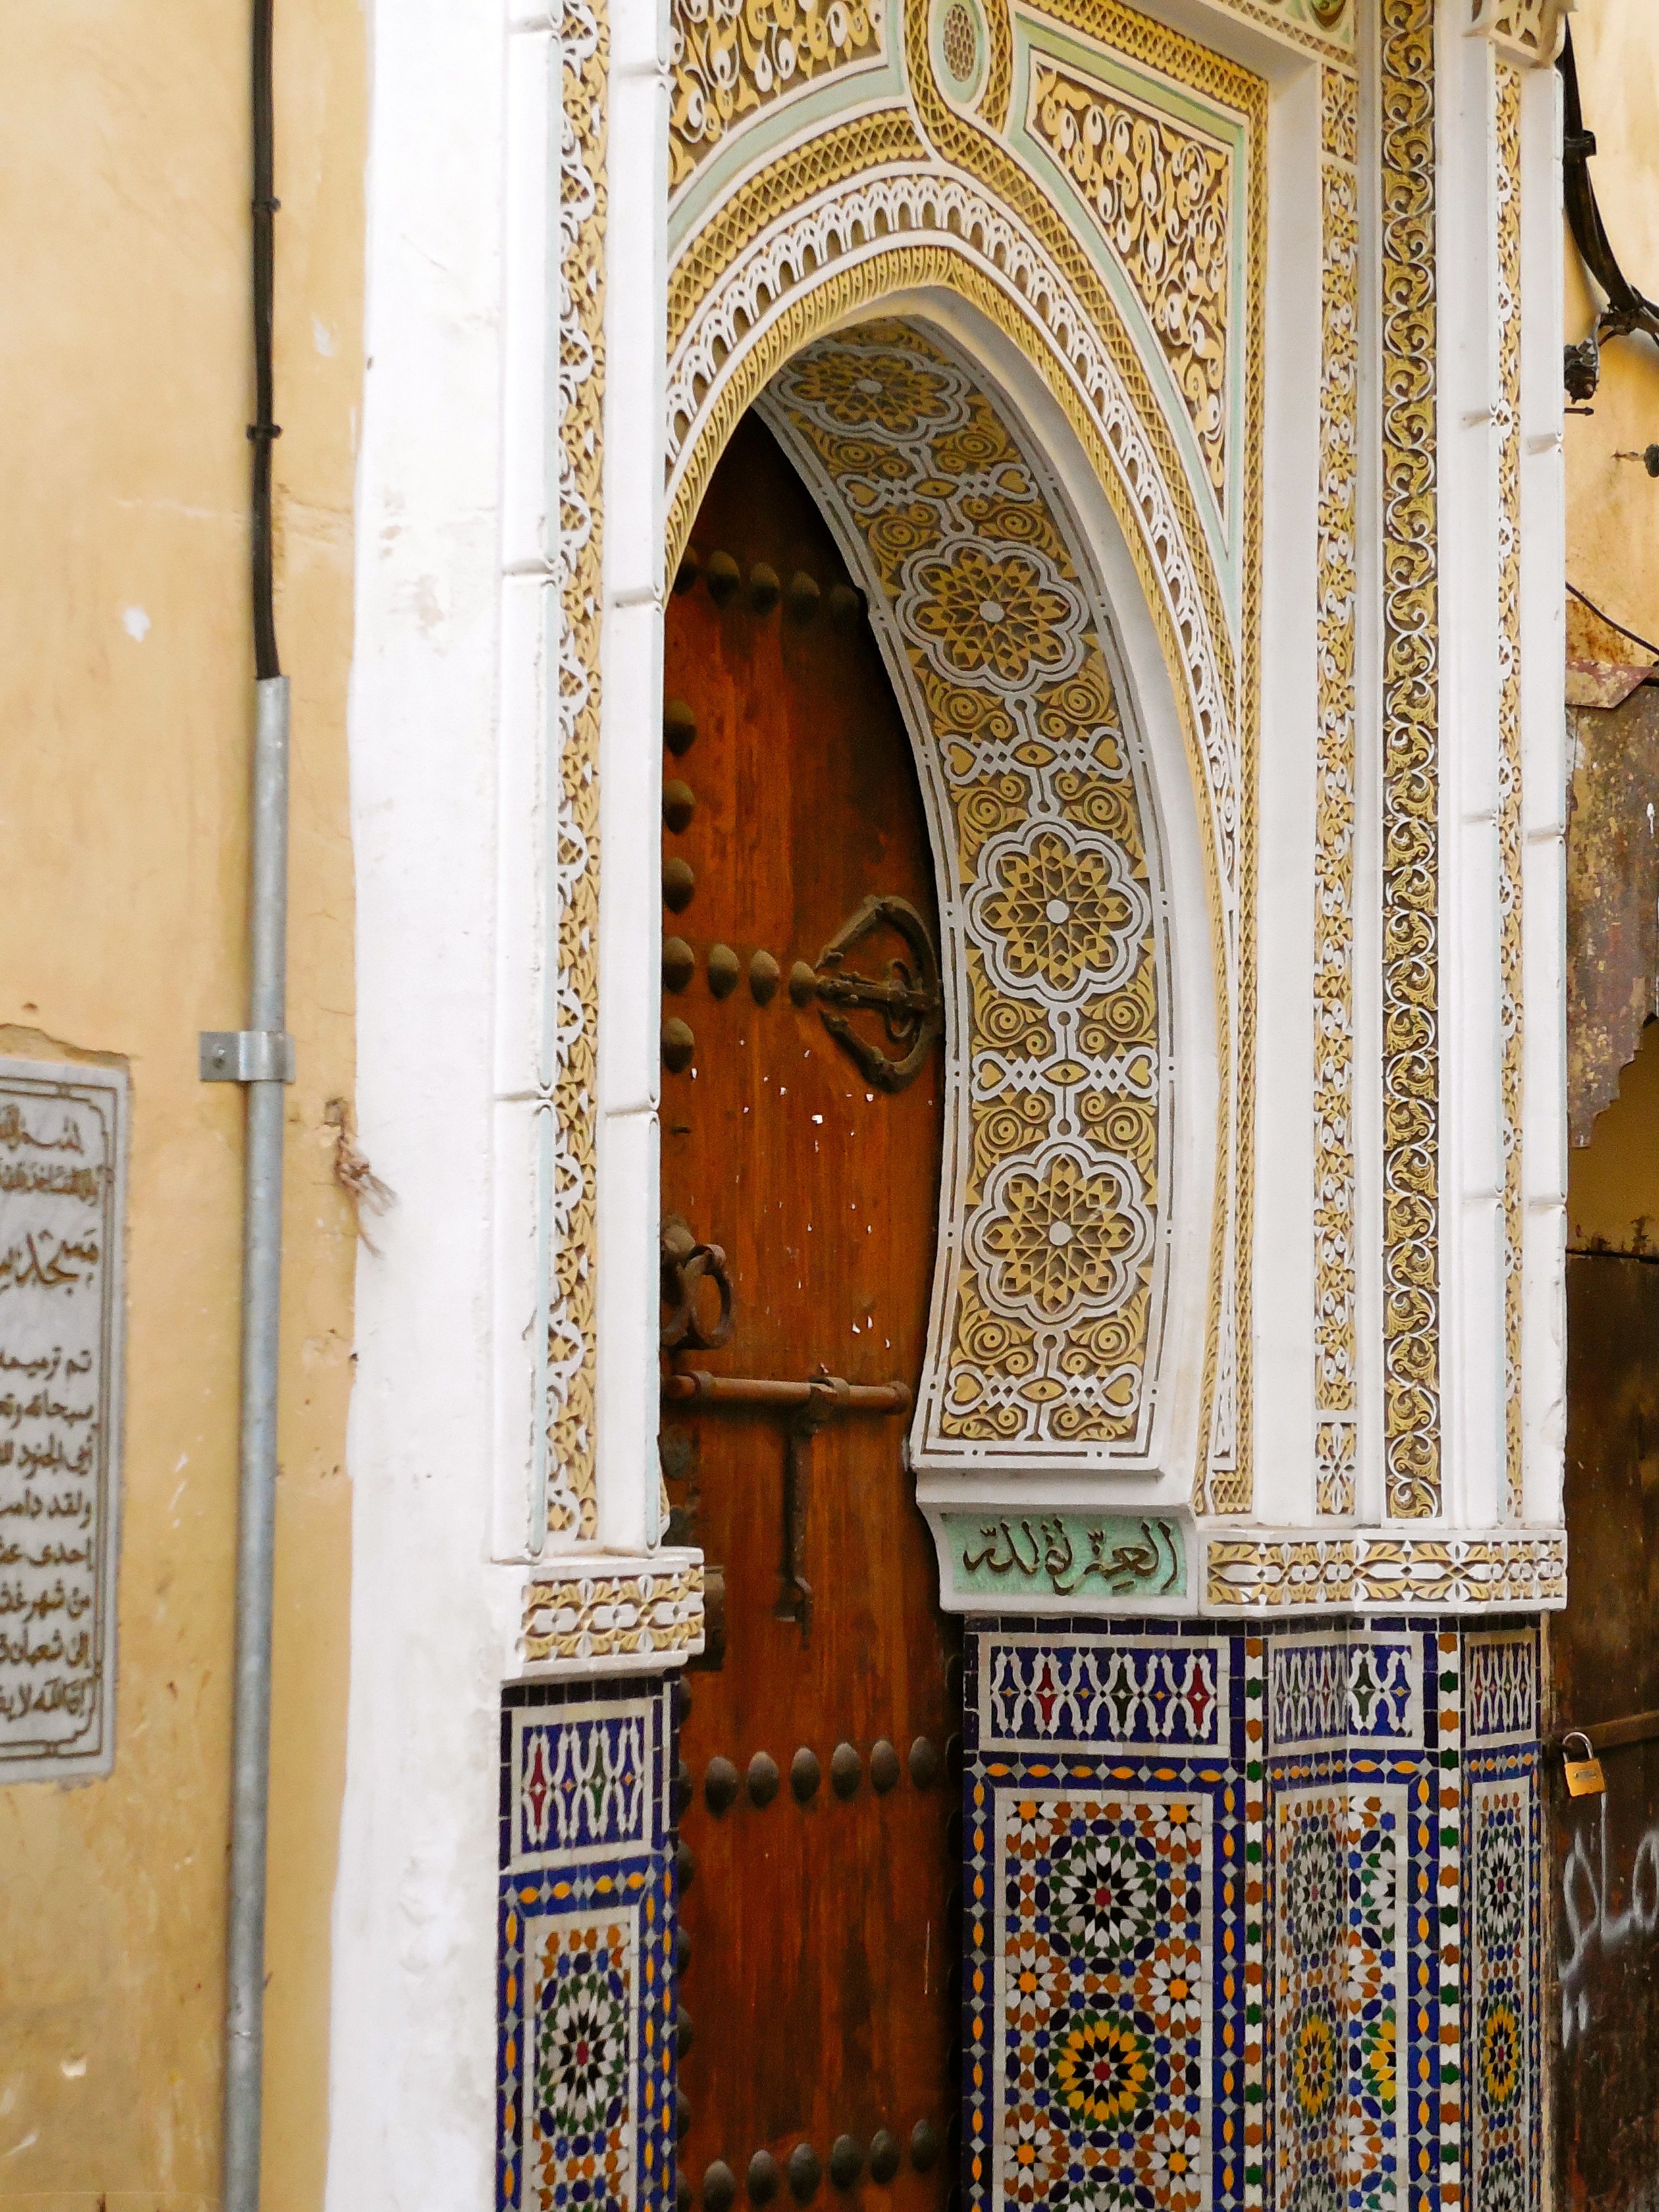 Fez doorway, Morocco